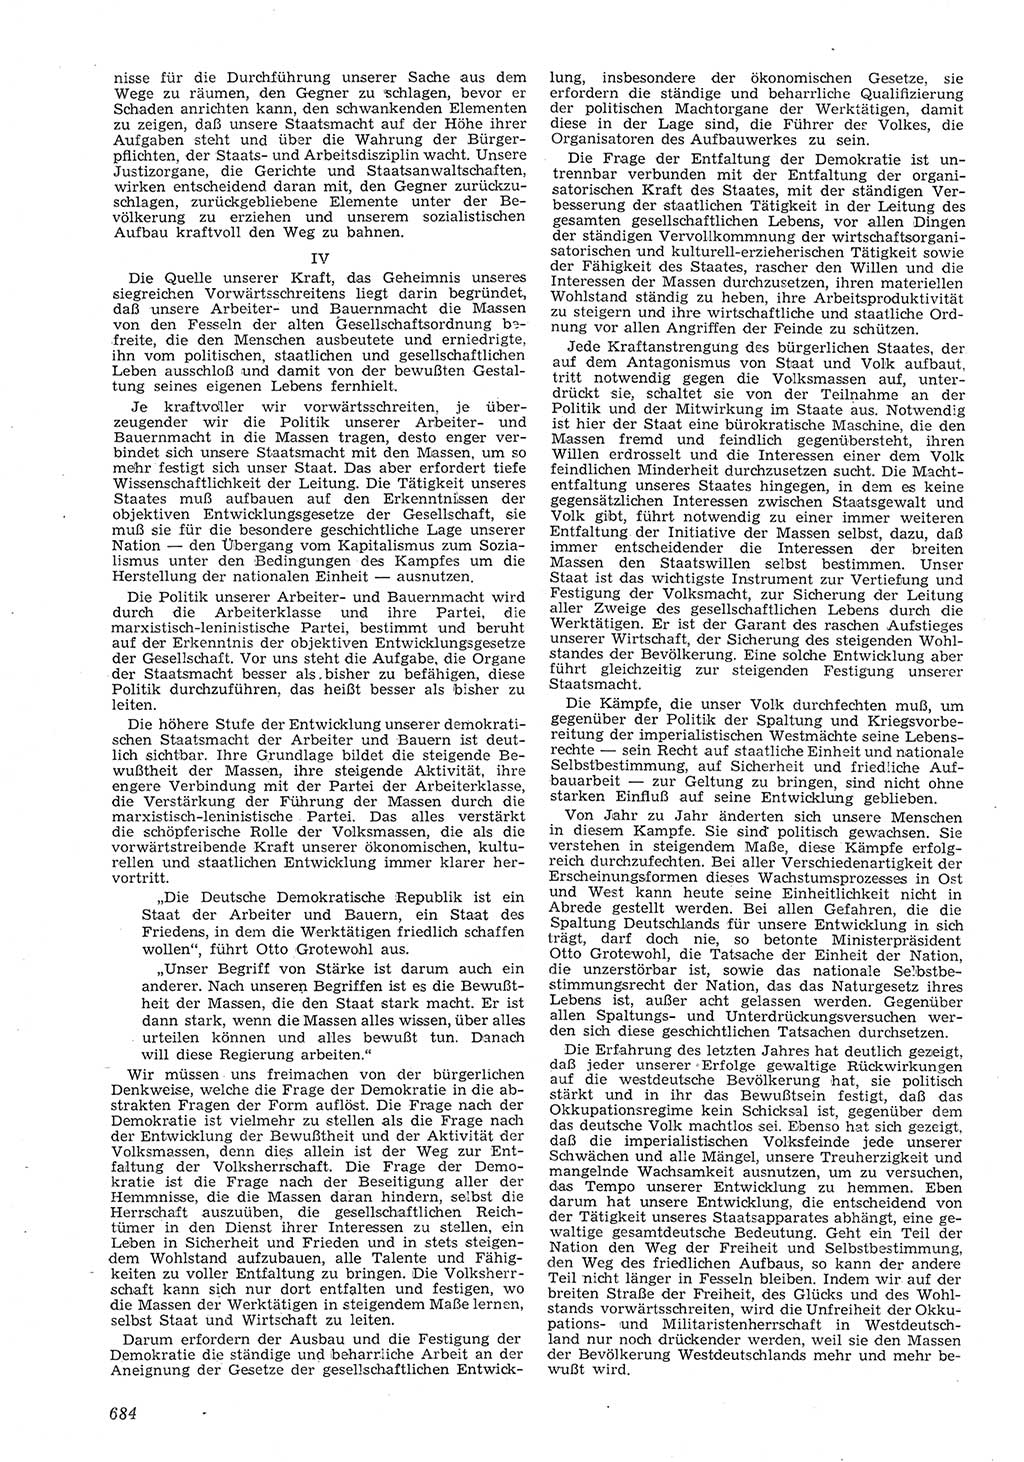 Neue Justiz (NJ), Zeitschrift für Recht und Rechtswissenschaft [Deutsche Demokratische Republik (DDR)], 8. Jahrgang 1954, Seite 684 (NJ DDR 1954, S. 684)